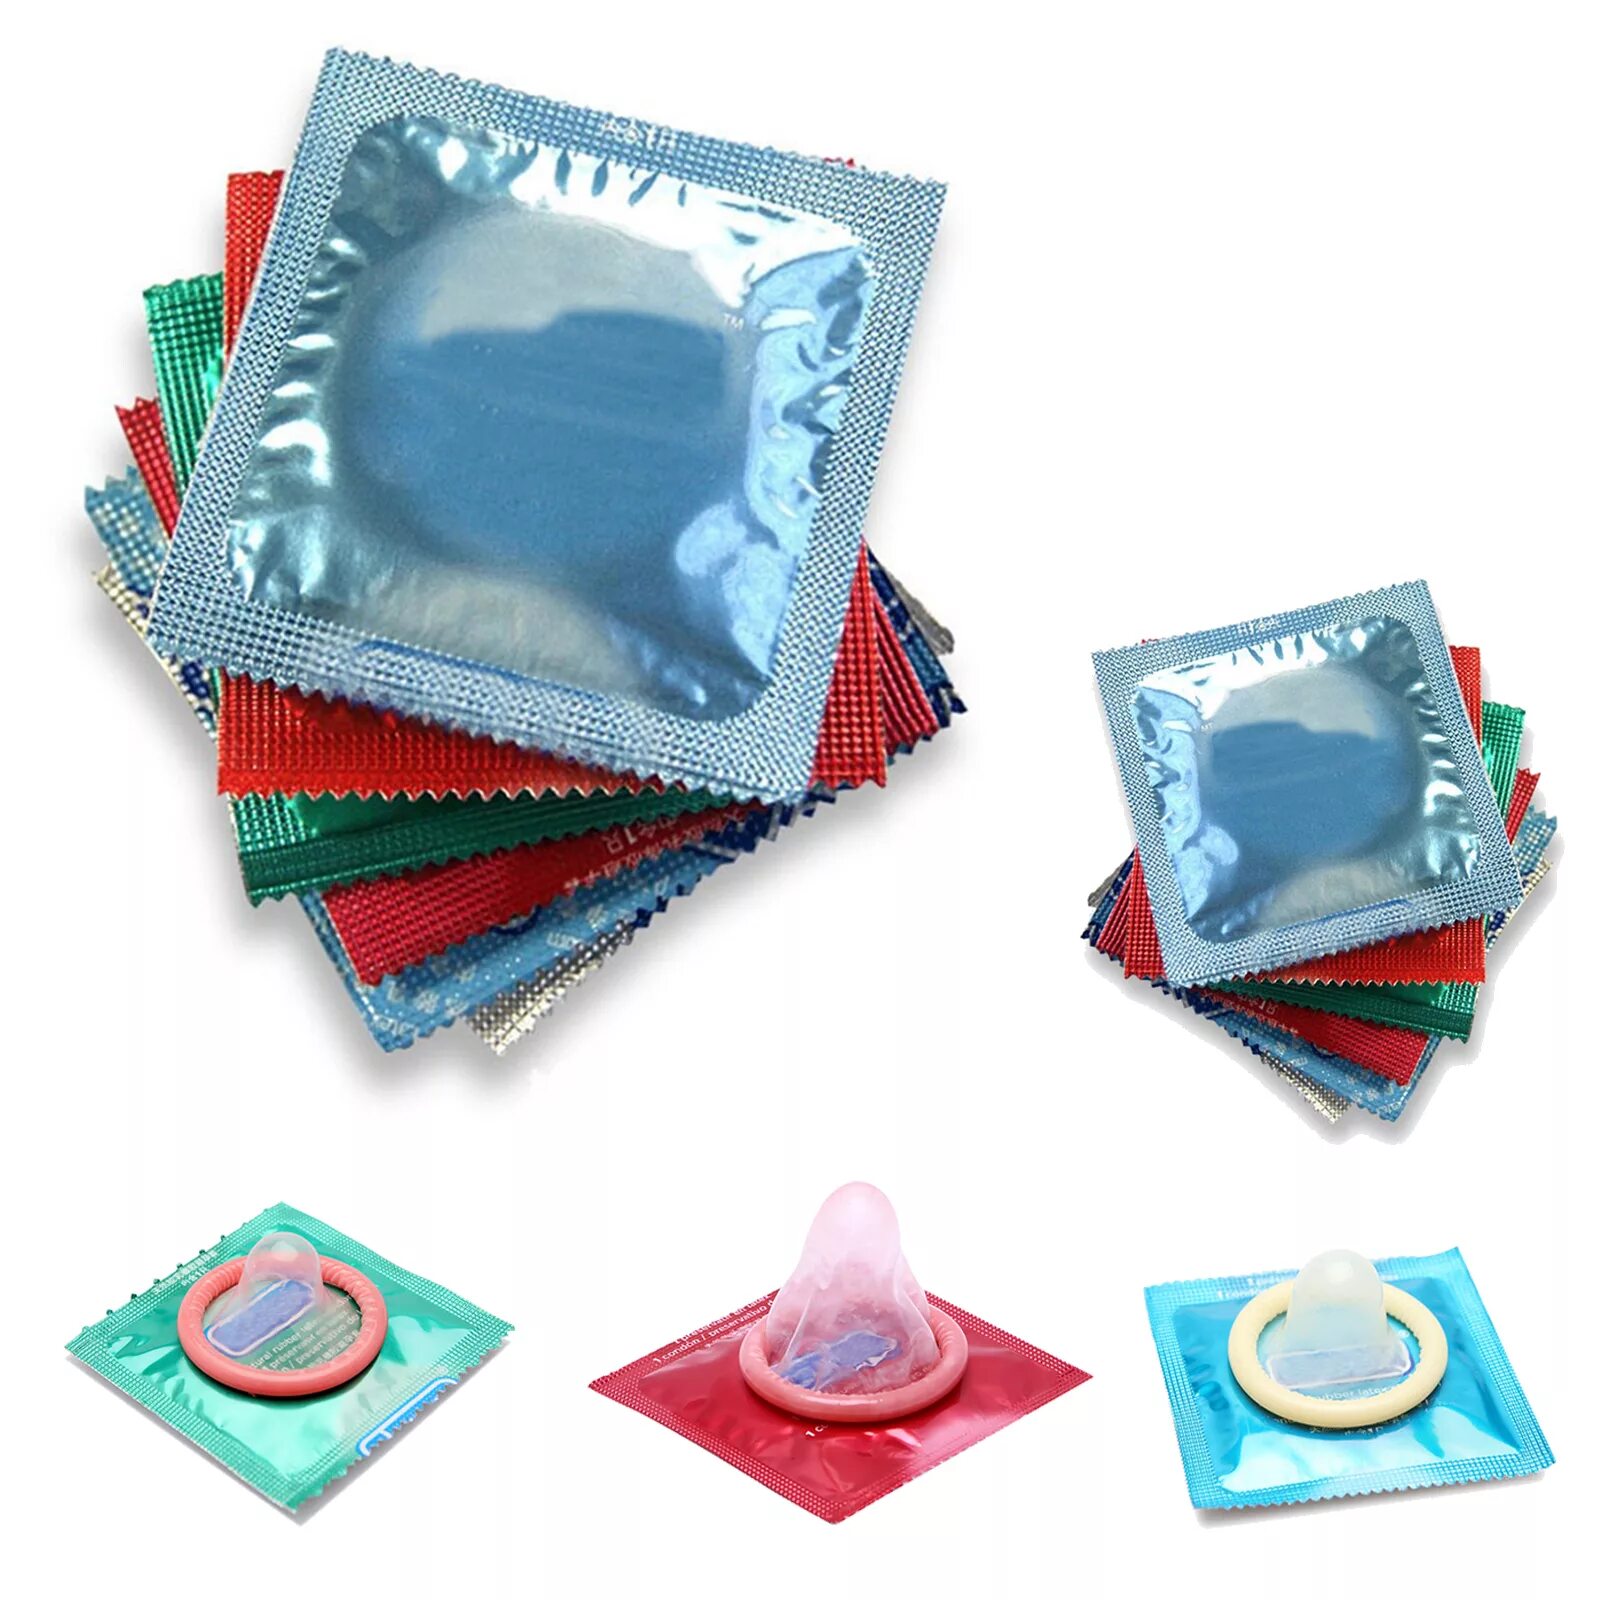 Полиуретан презервативы. Пластиковый презерватив. Презервативы в пластмассовой упаковке. Разнообразие презервативов.